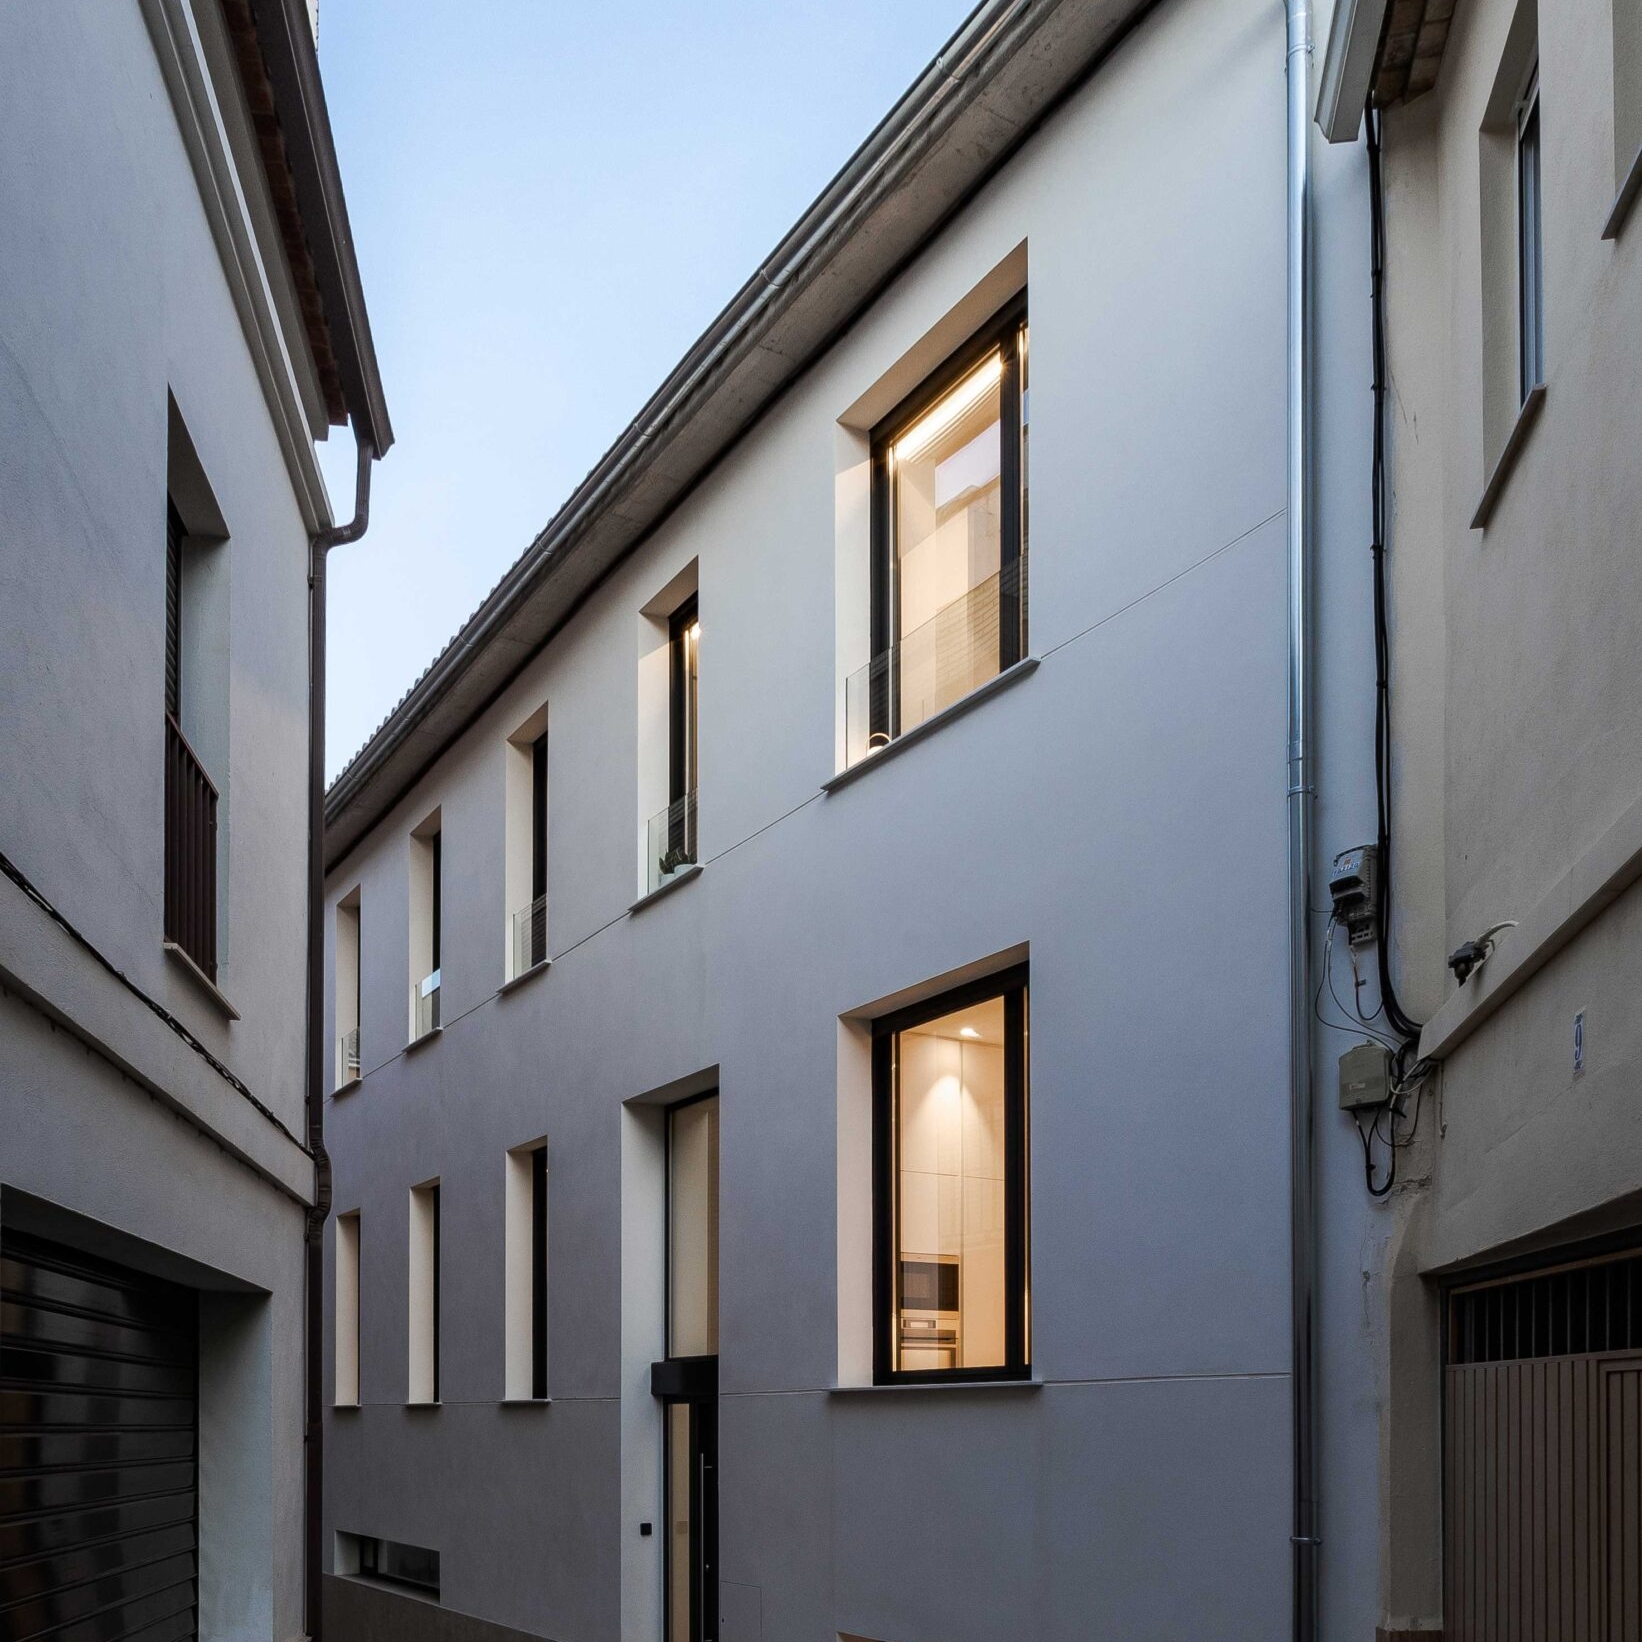 Casa Cin. Vivienda unifamiliar entre medianeras en Llíria. Arquitectura en Llíria